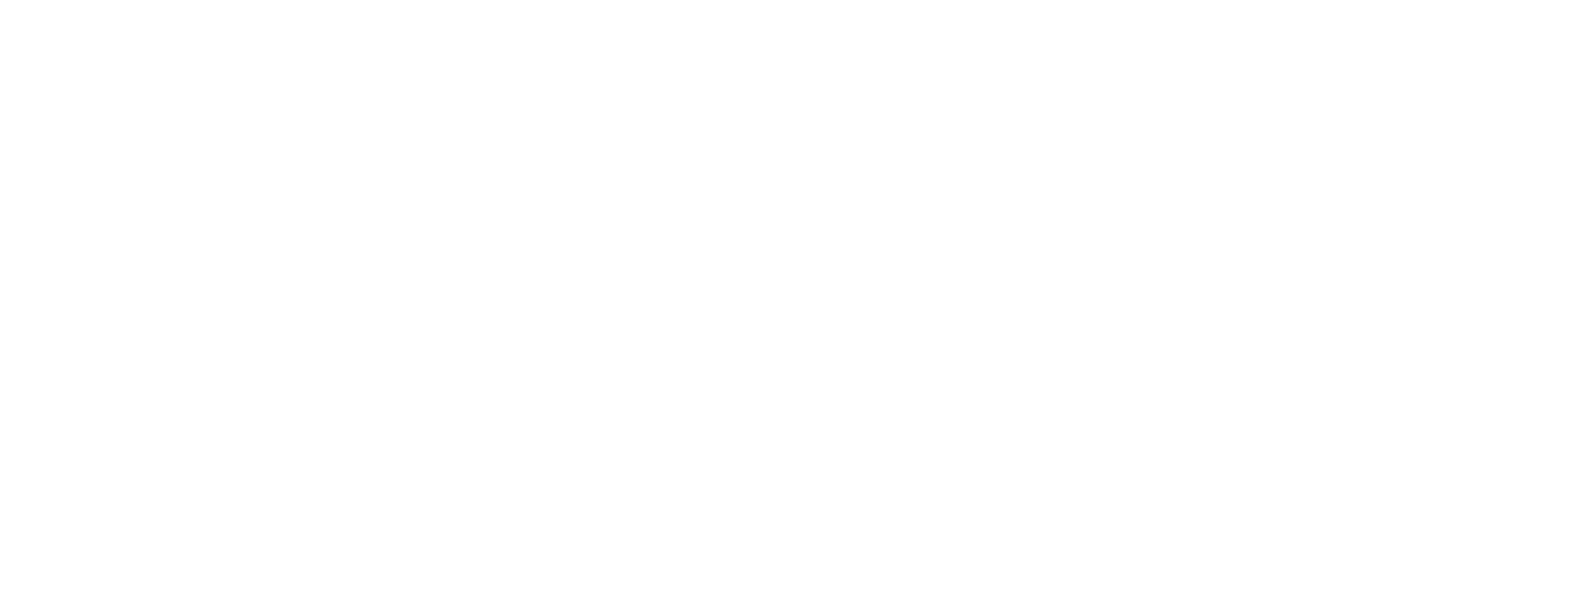 General Dynamics logo for dark backgrounds (transparent PNG)